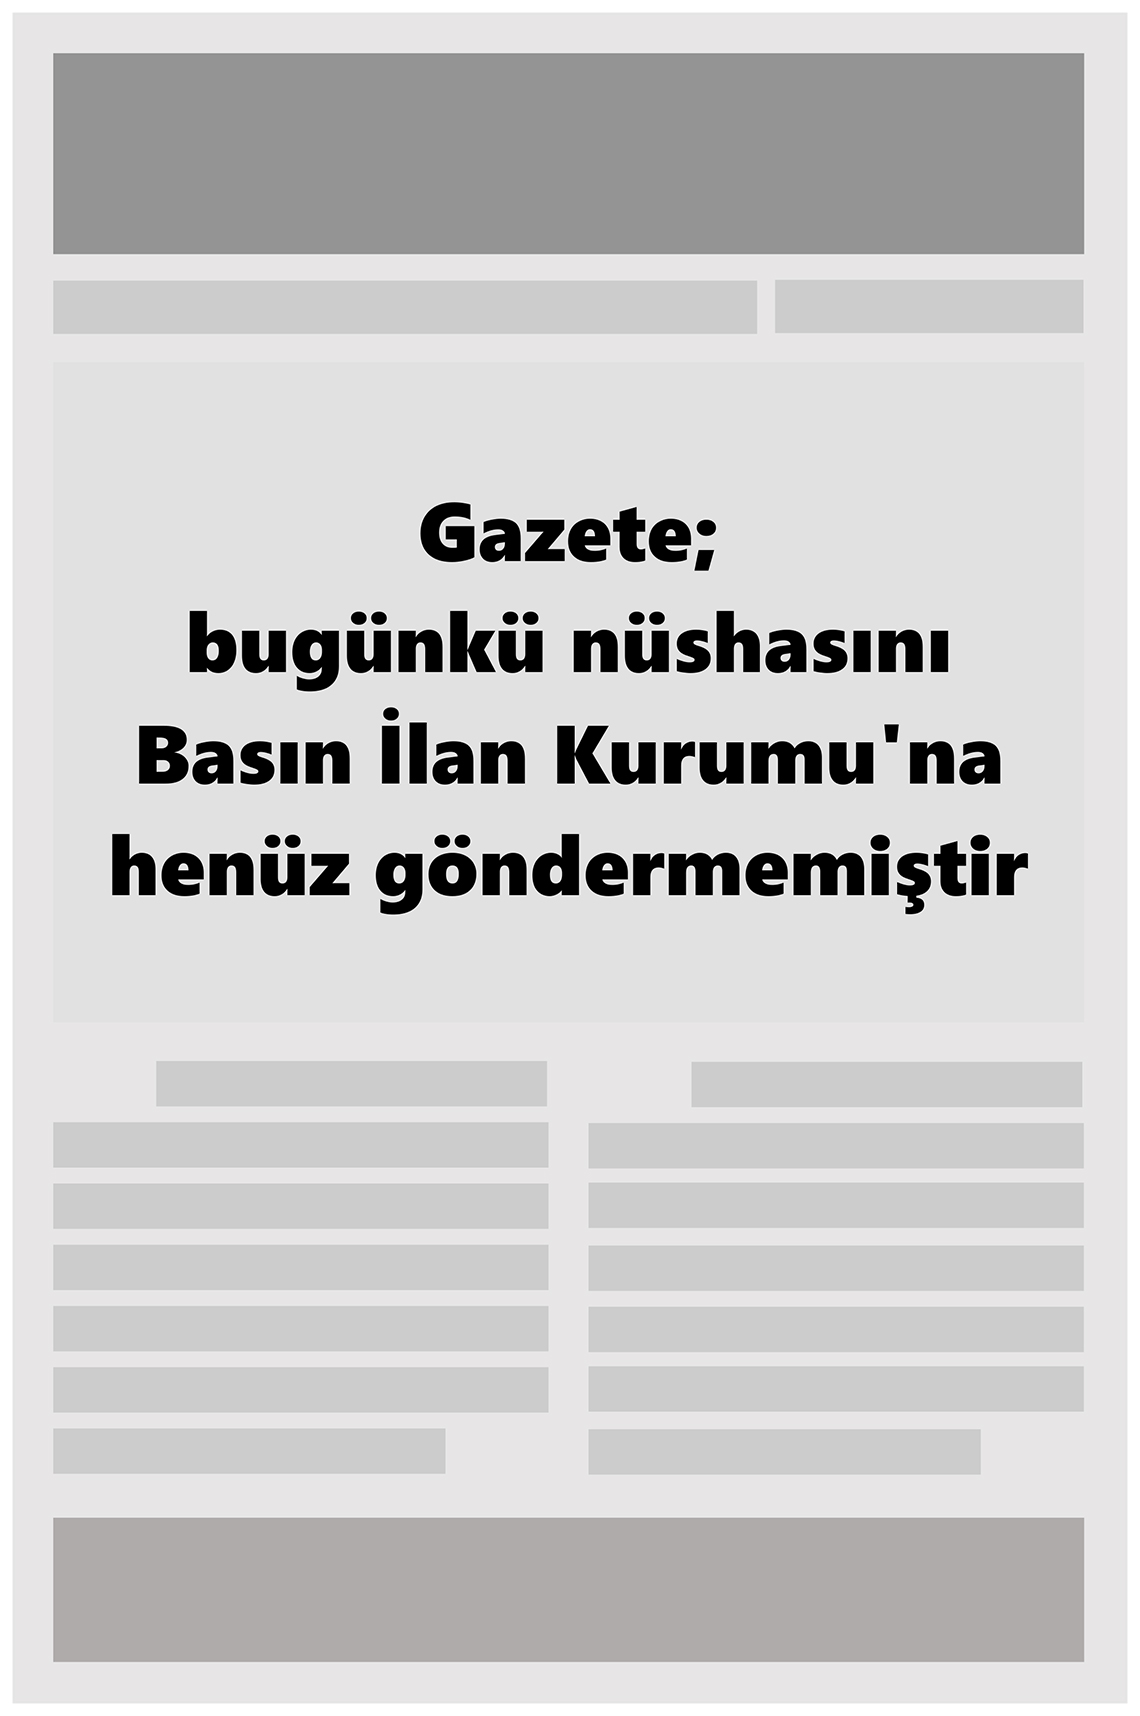 21 Ağustos 2022 Elazığ Haberkent Gazete Manşeti